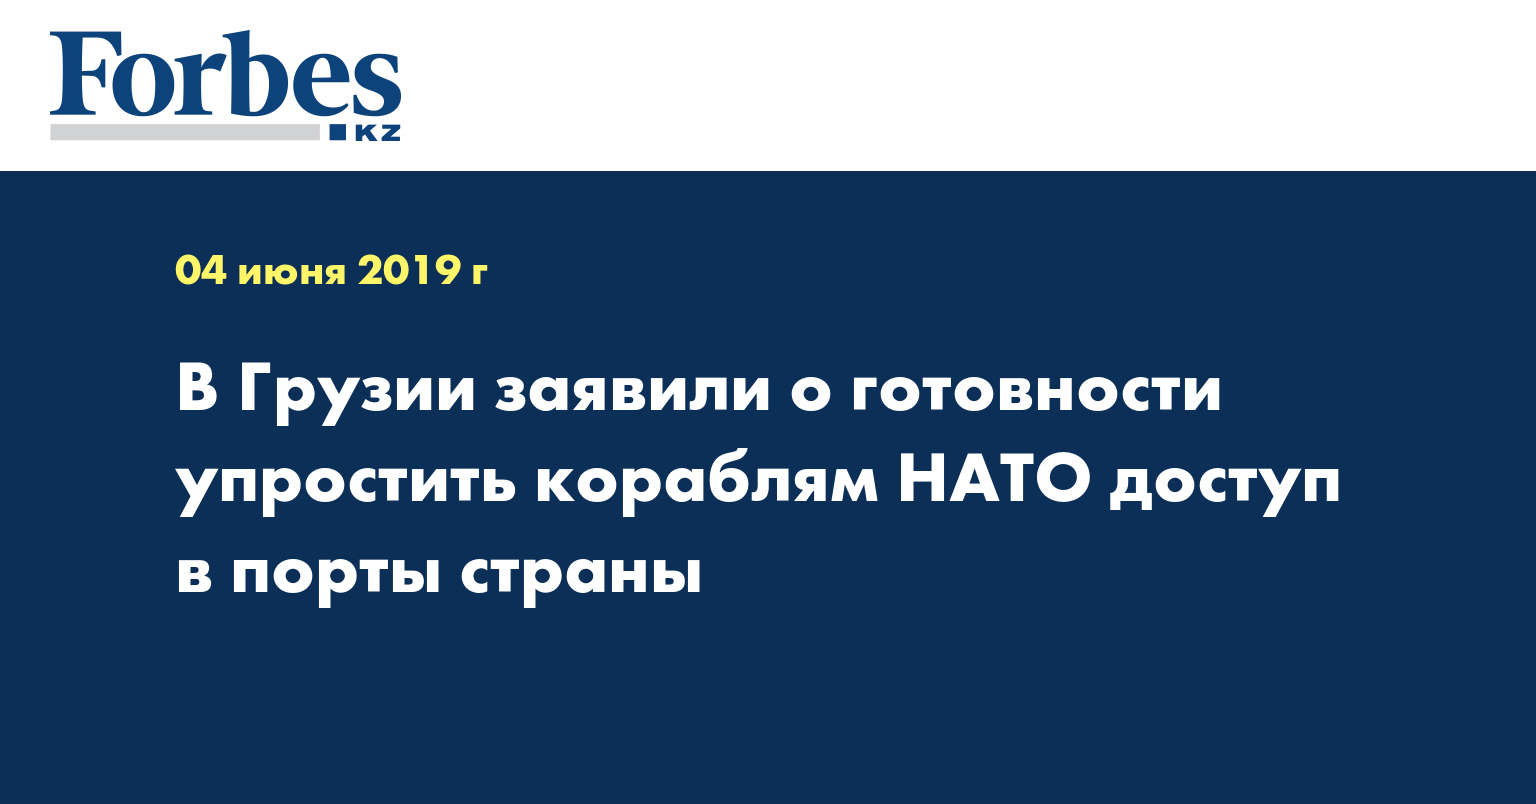 В Грузии заявили о готовности упростить кораблям НАТО доступ в порты страны